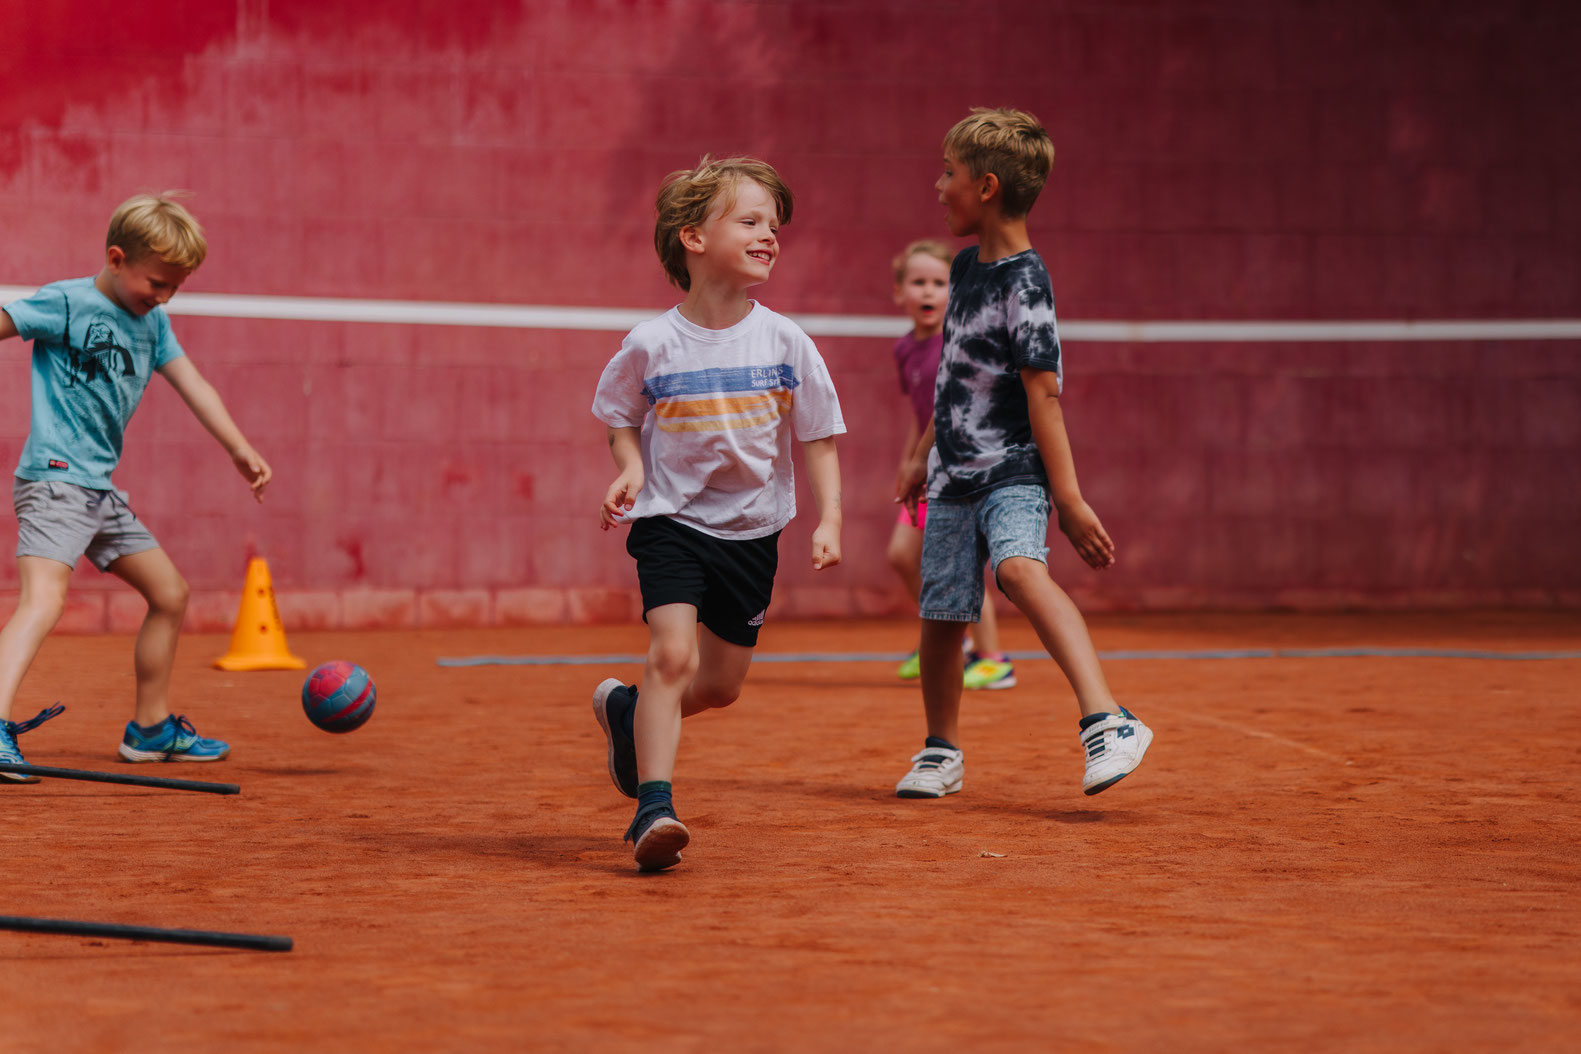 Unser Kindersport-Programm für 2- bis 3-Jährige bietet Tennis, Hockey, Basketball, Handball und Fußball. In 5 Trainingseinheiten à 60 Minuten lernen Kinder spielerisch die Sportarten kennen, lernen einfache Regeln und stärken ihre motorischen Fähigkeiten.